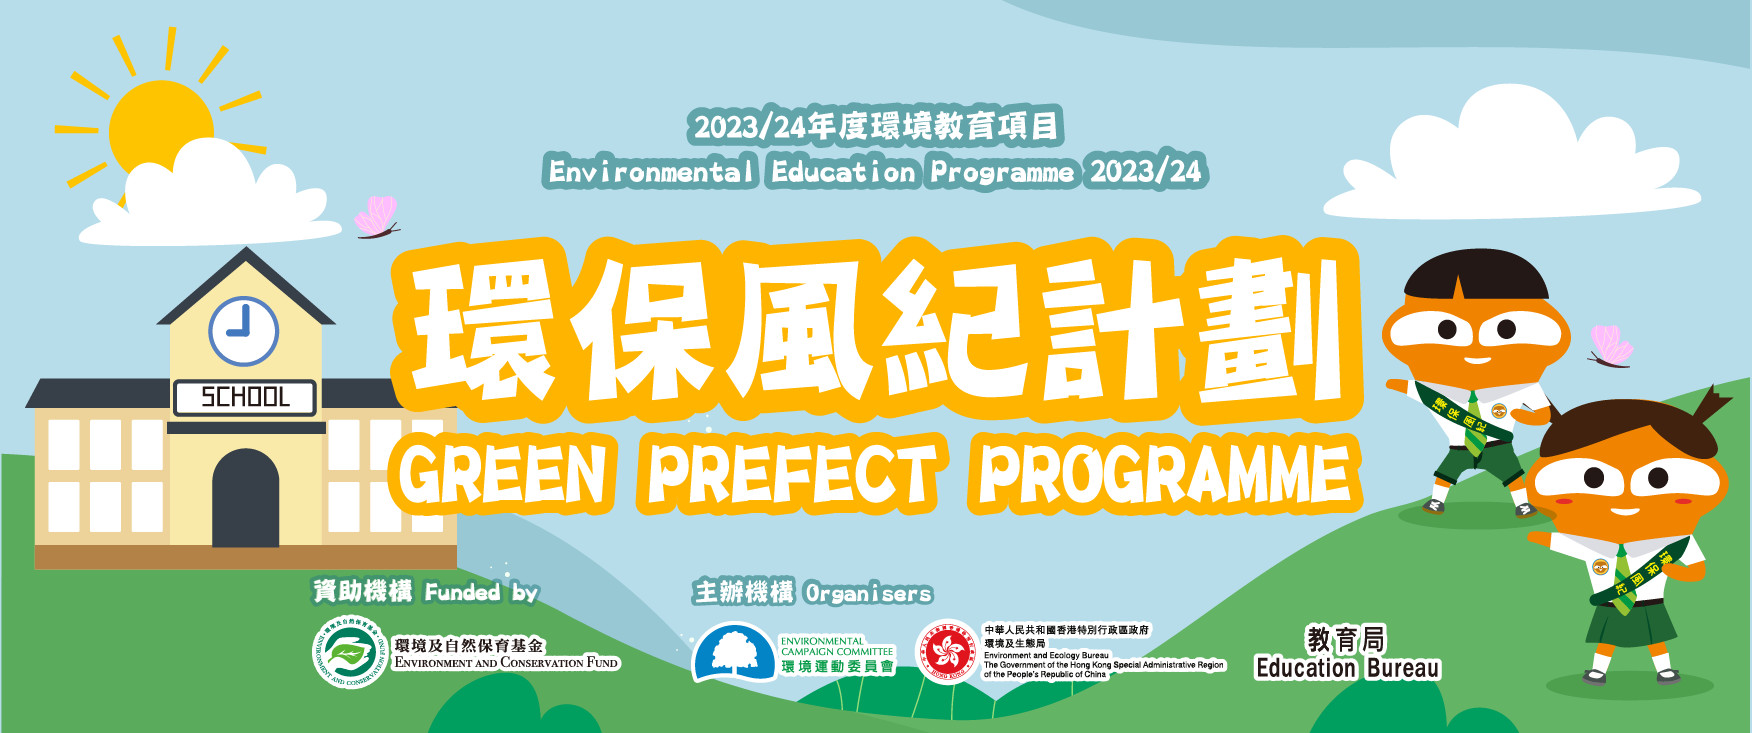 Green Prefect Programme